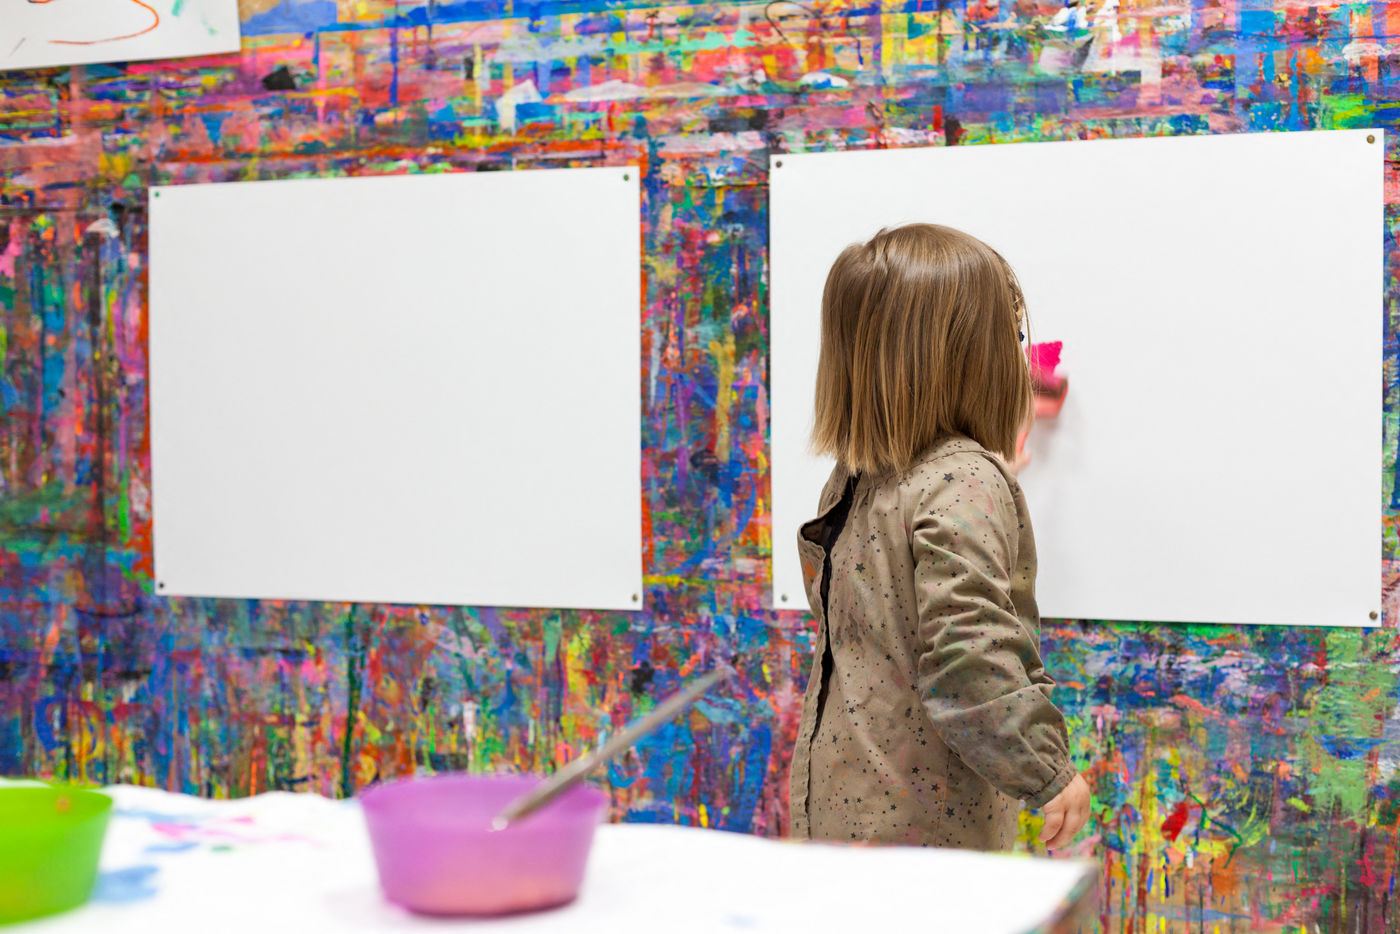 Atelier de peinture libre debout pour les 0-3 ans (Christelle Calmettes)